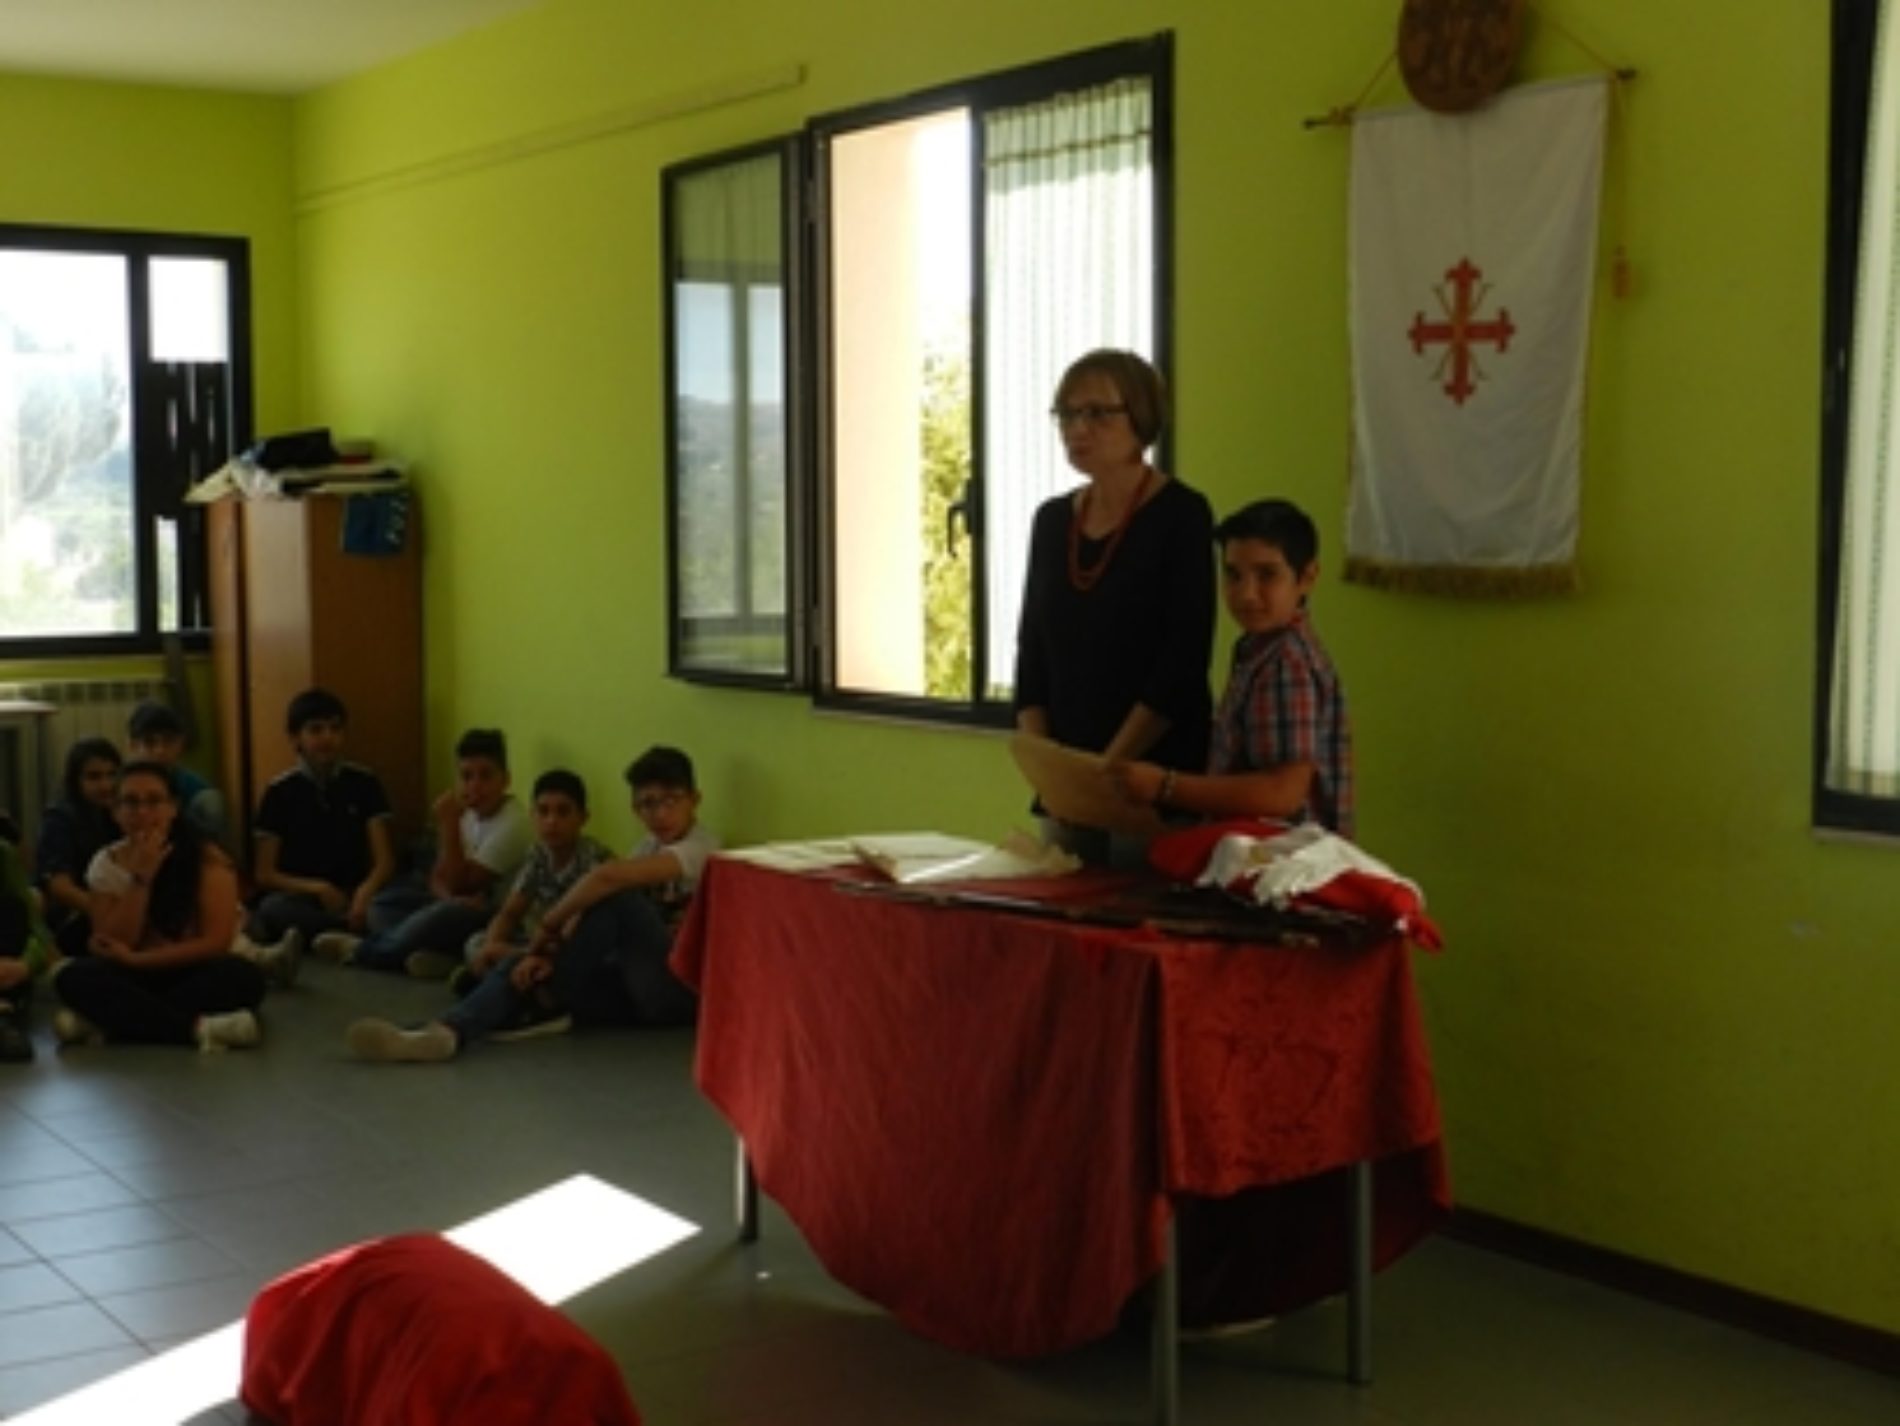 Conclusione del progetto “Vita da cavaliere” presso la scuola Don Milani